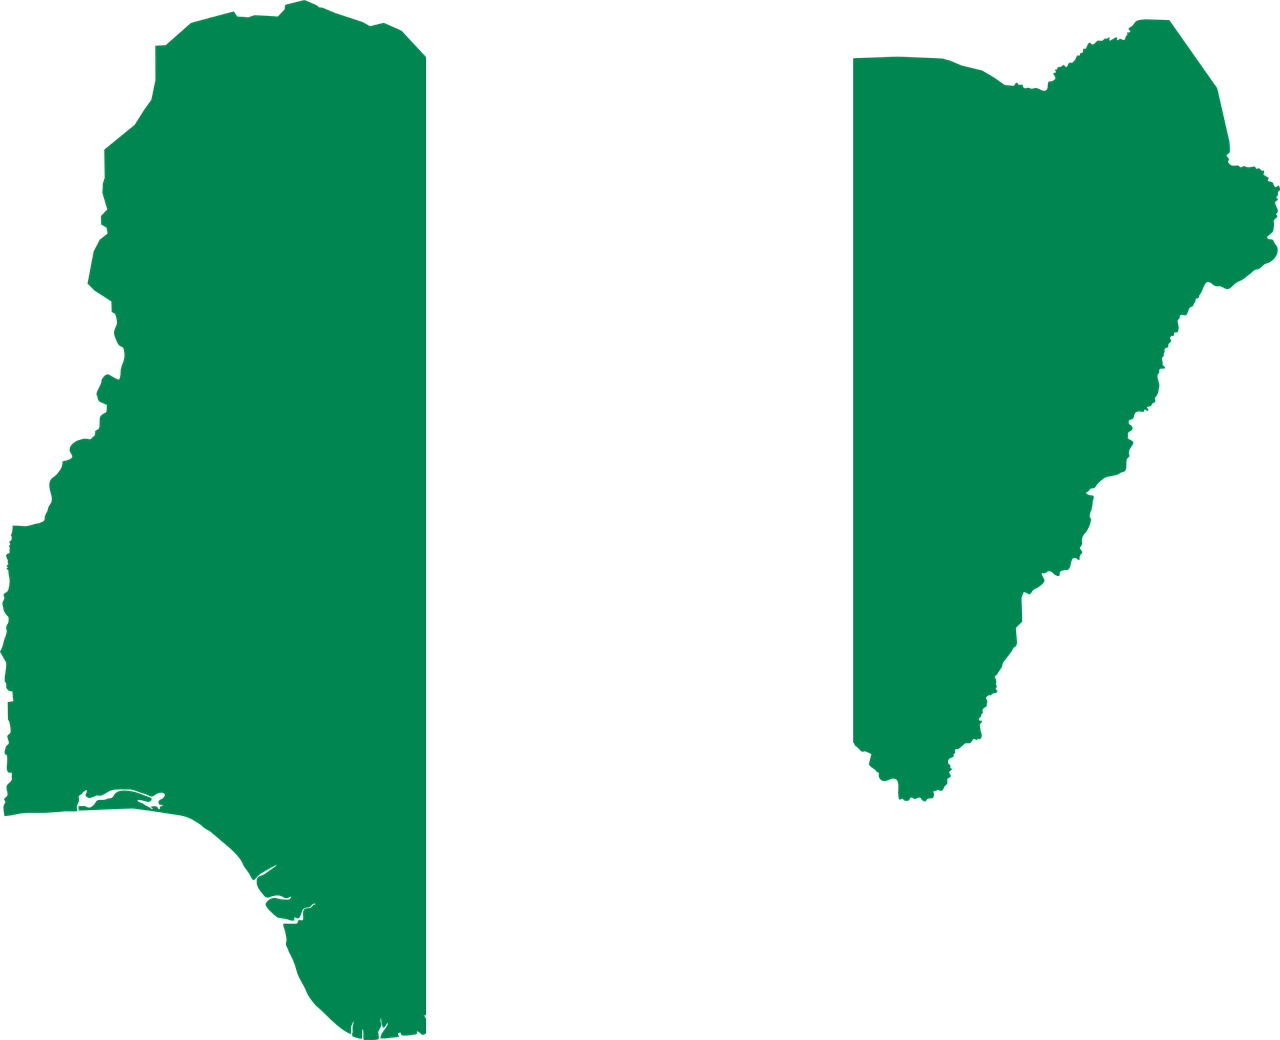 Nigeria (photo credit: GDJ via pixabay)